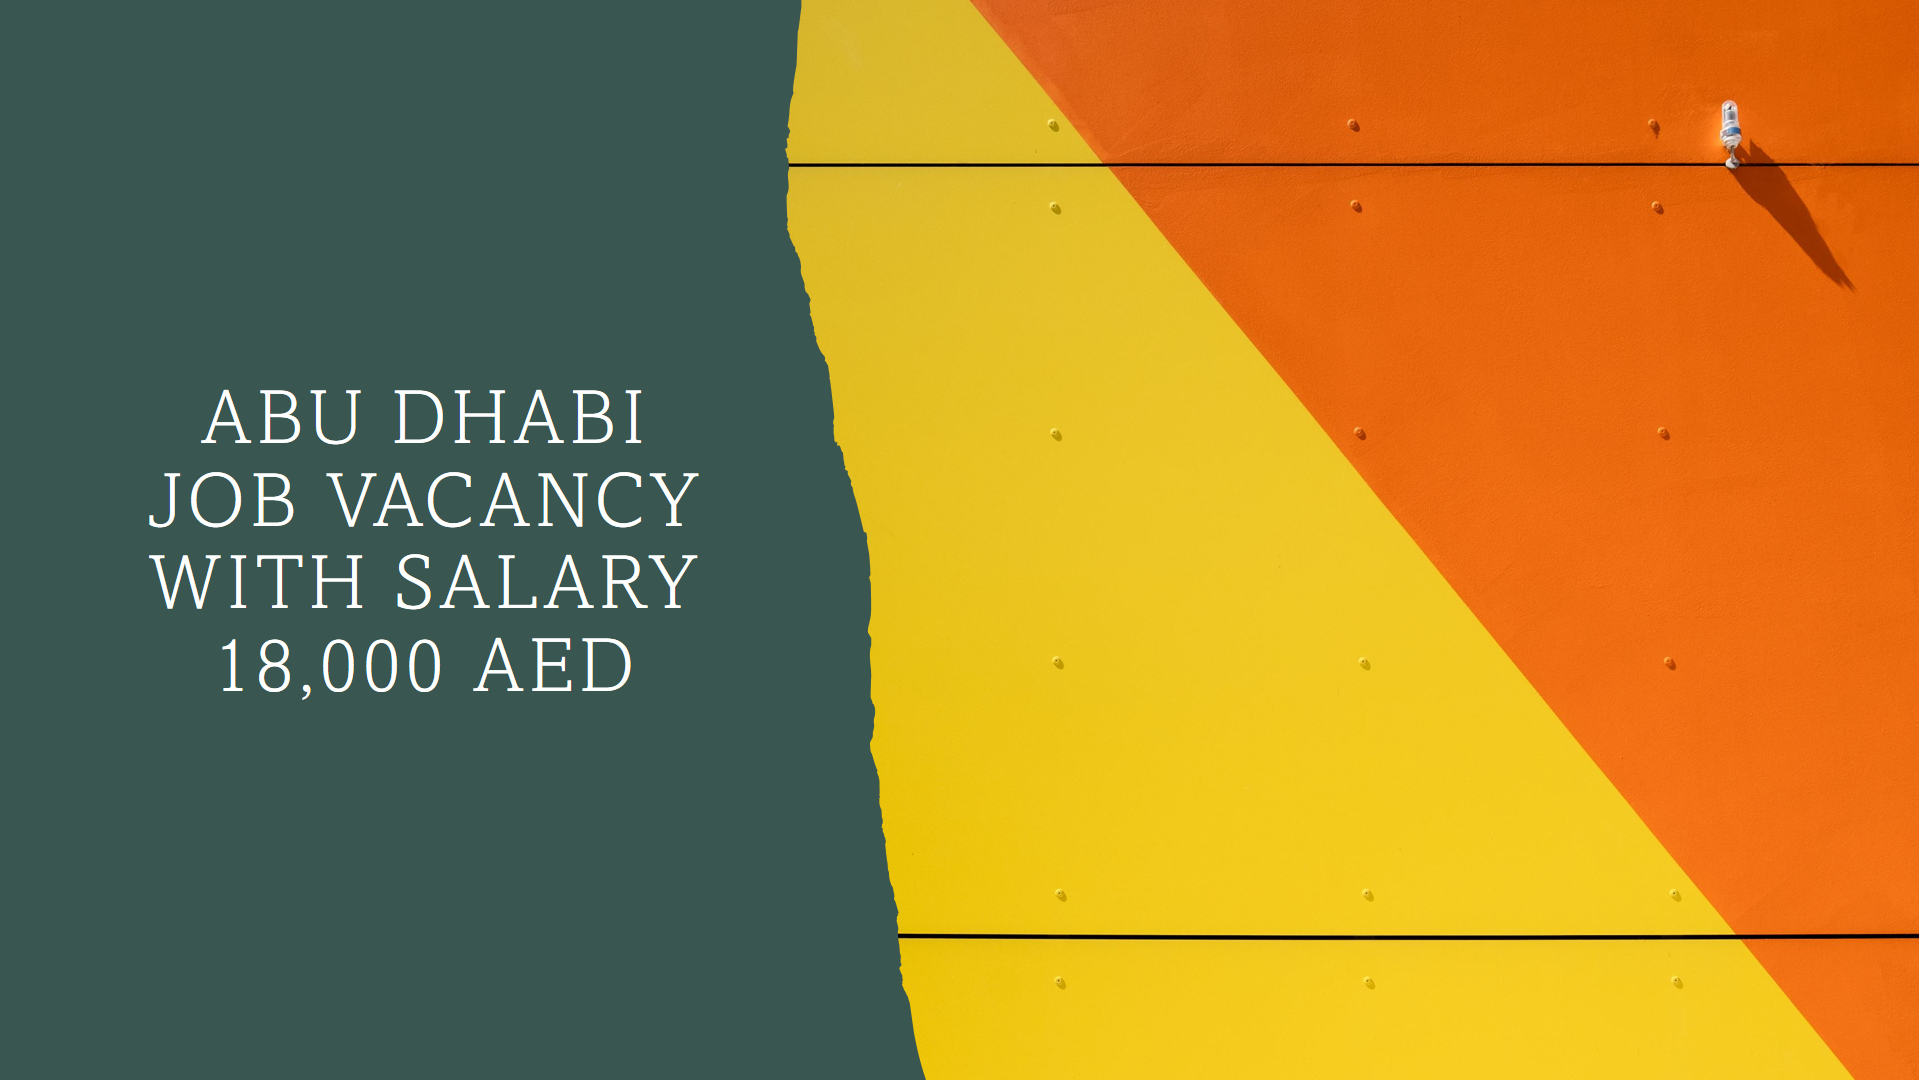 abu dhabi job vacancy with salary 18,000 AED